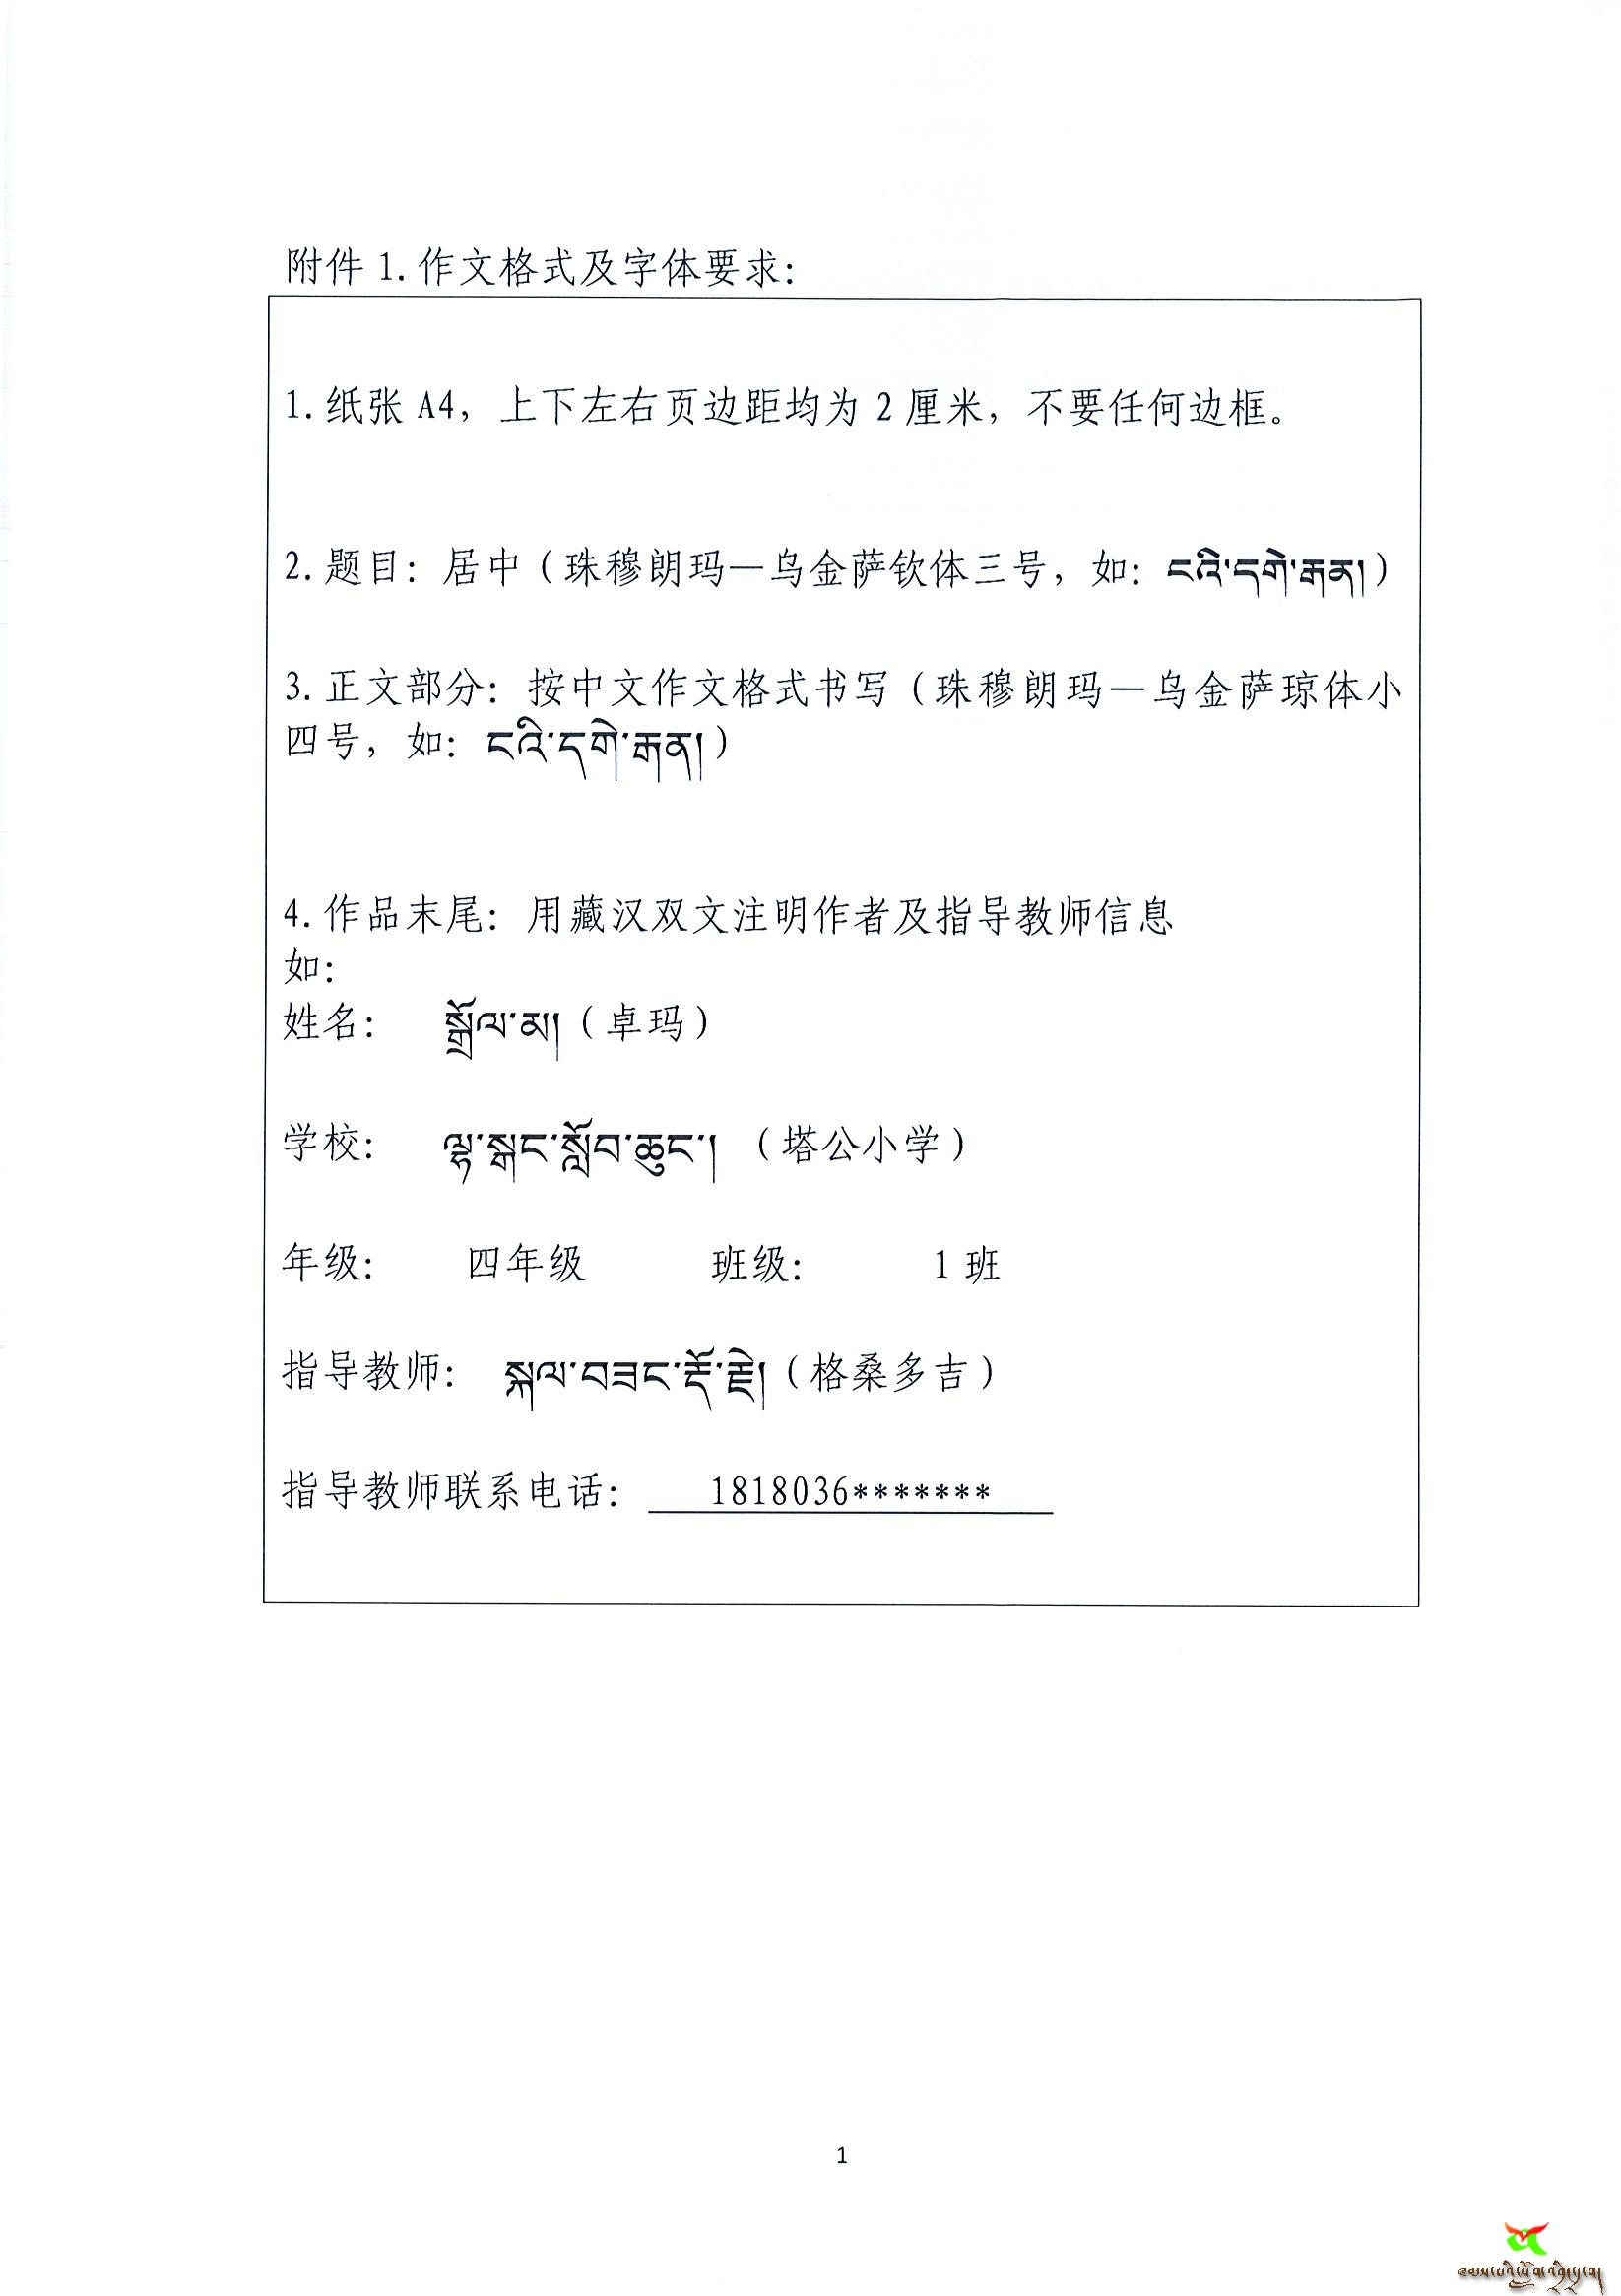 甘教所[2018]57号   甘孜州教科所关于组织全州小学生藏文作文征集评选活动的通知4_1.jpg